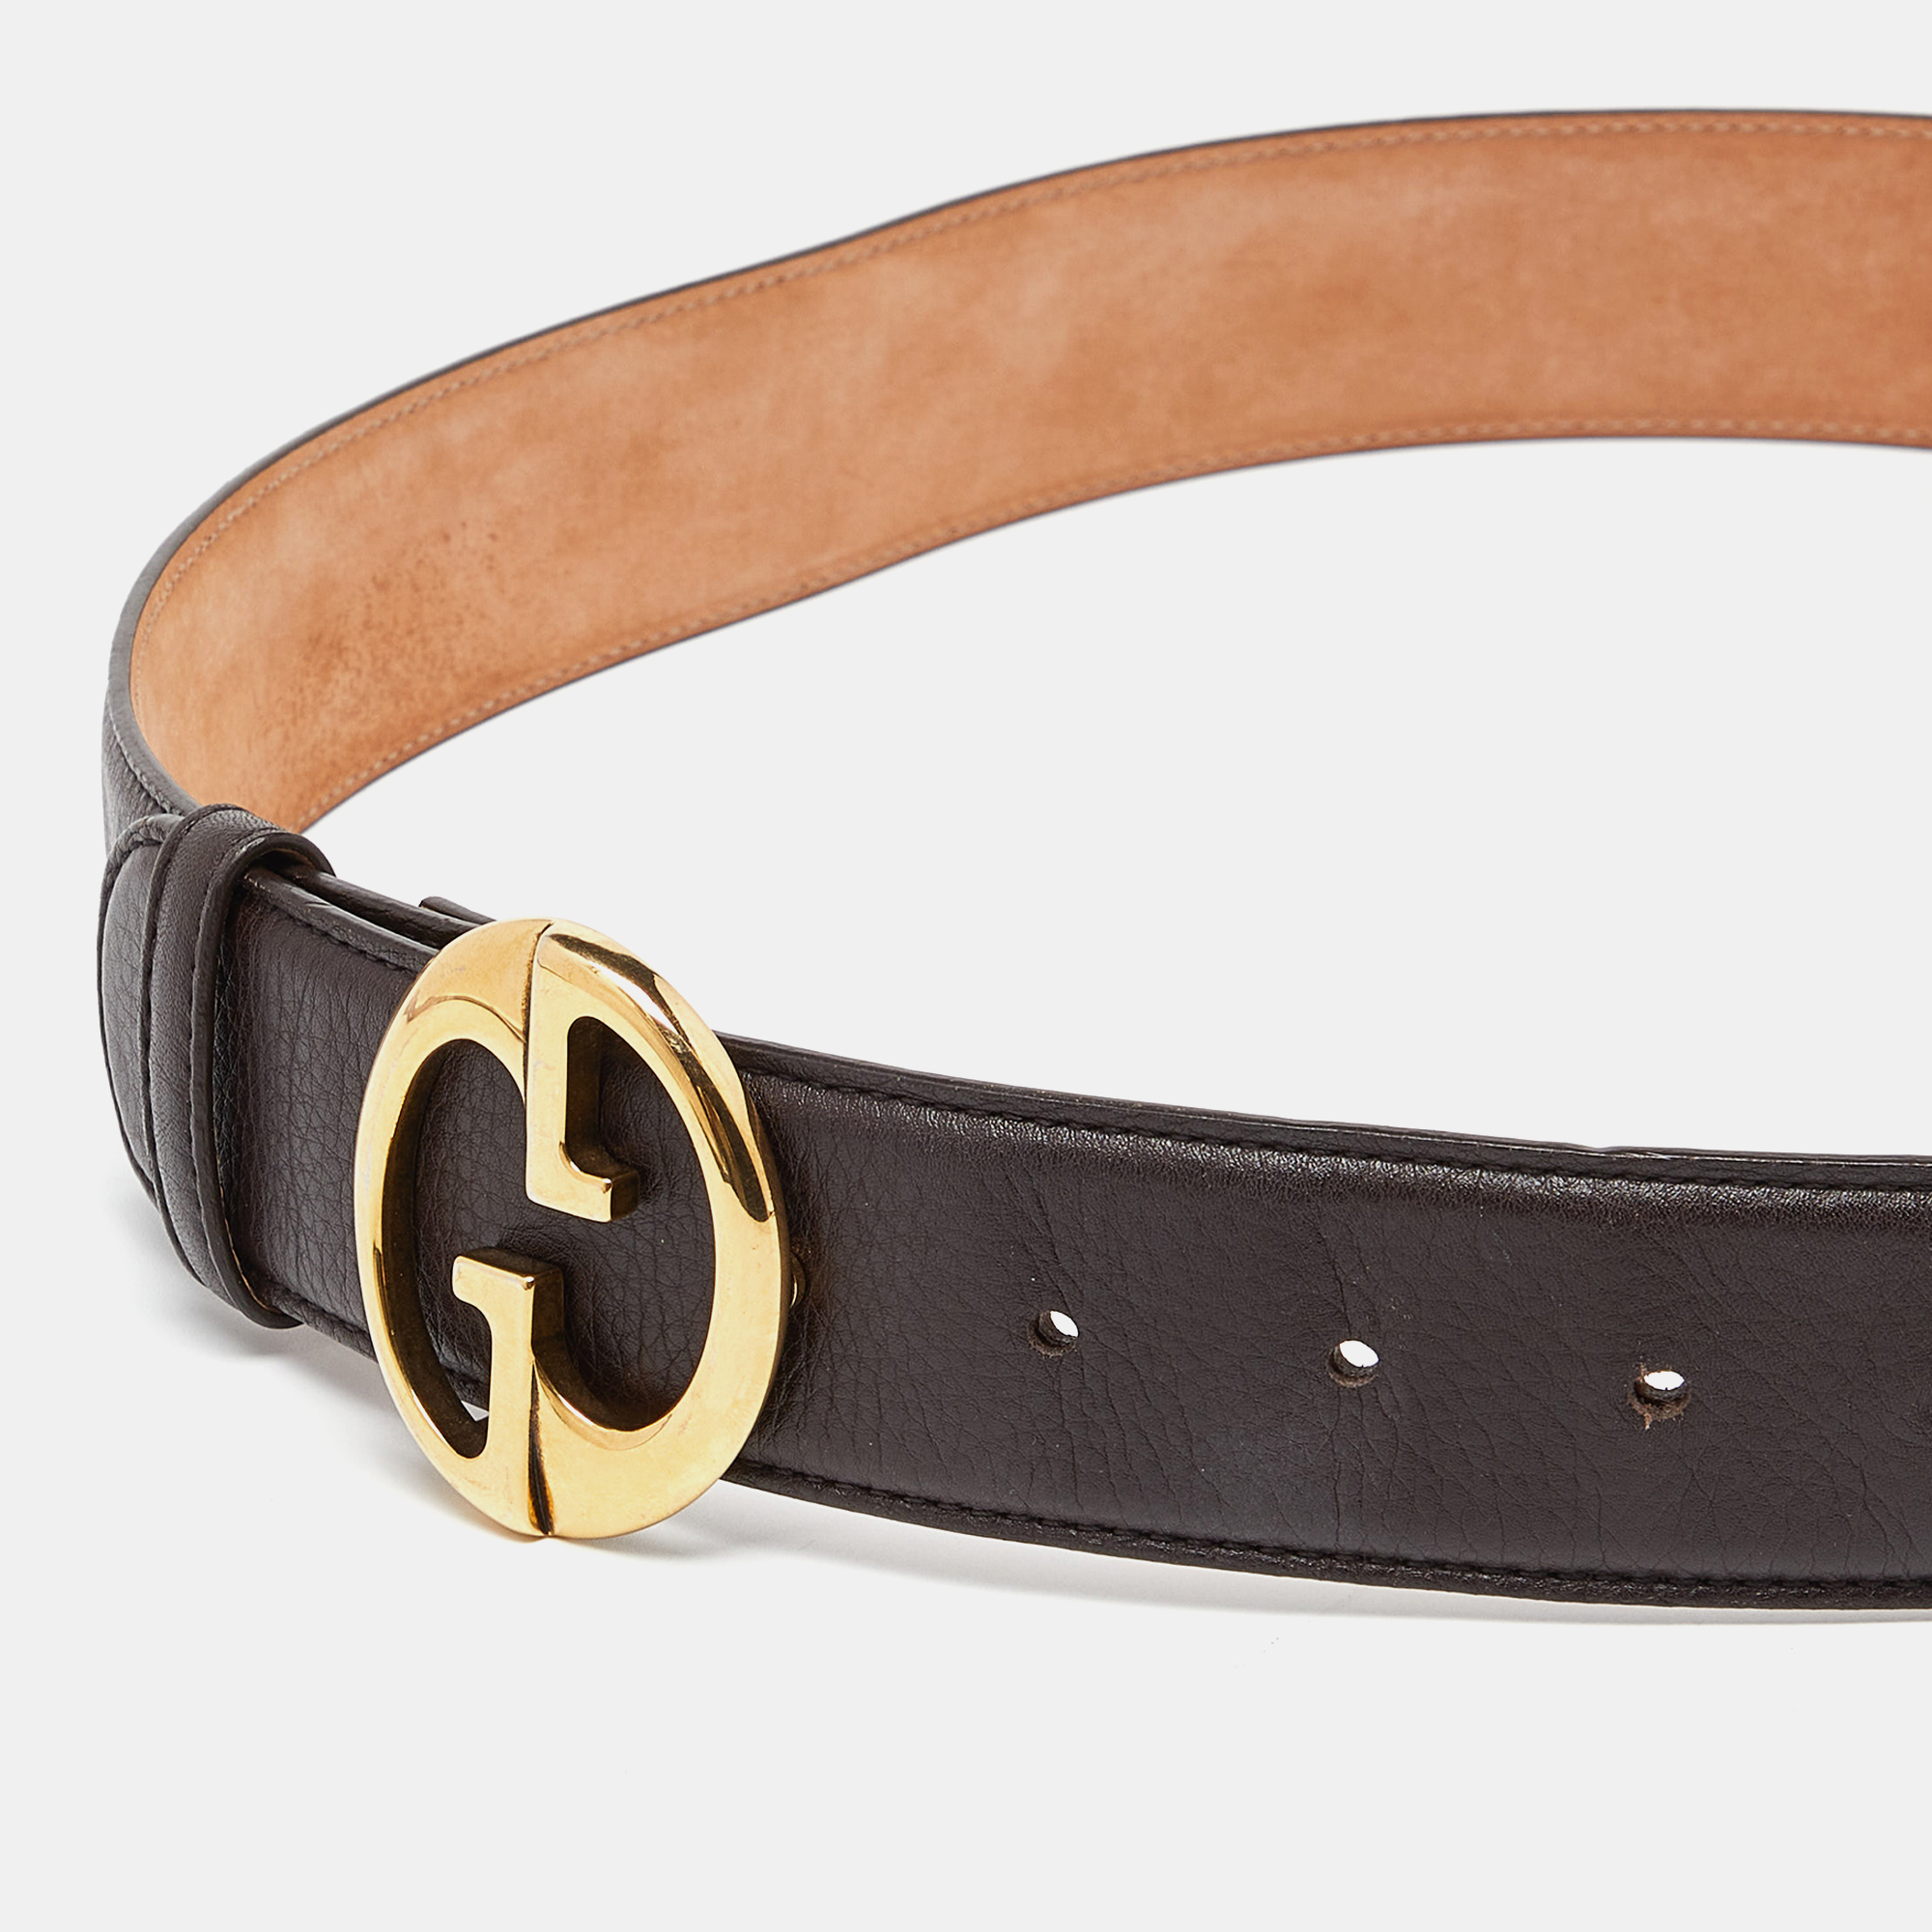 Gucci Brown Leather Interlocking G Buckle Belt 90CM